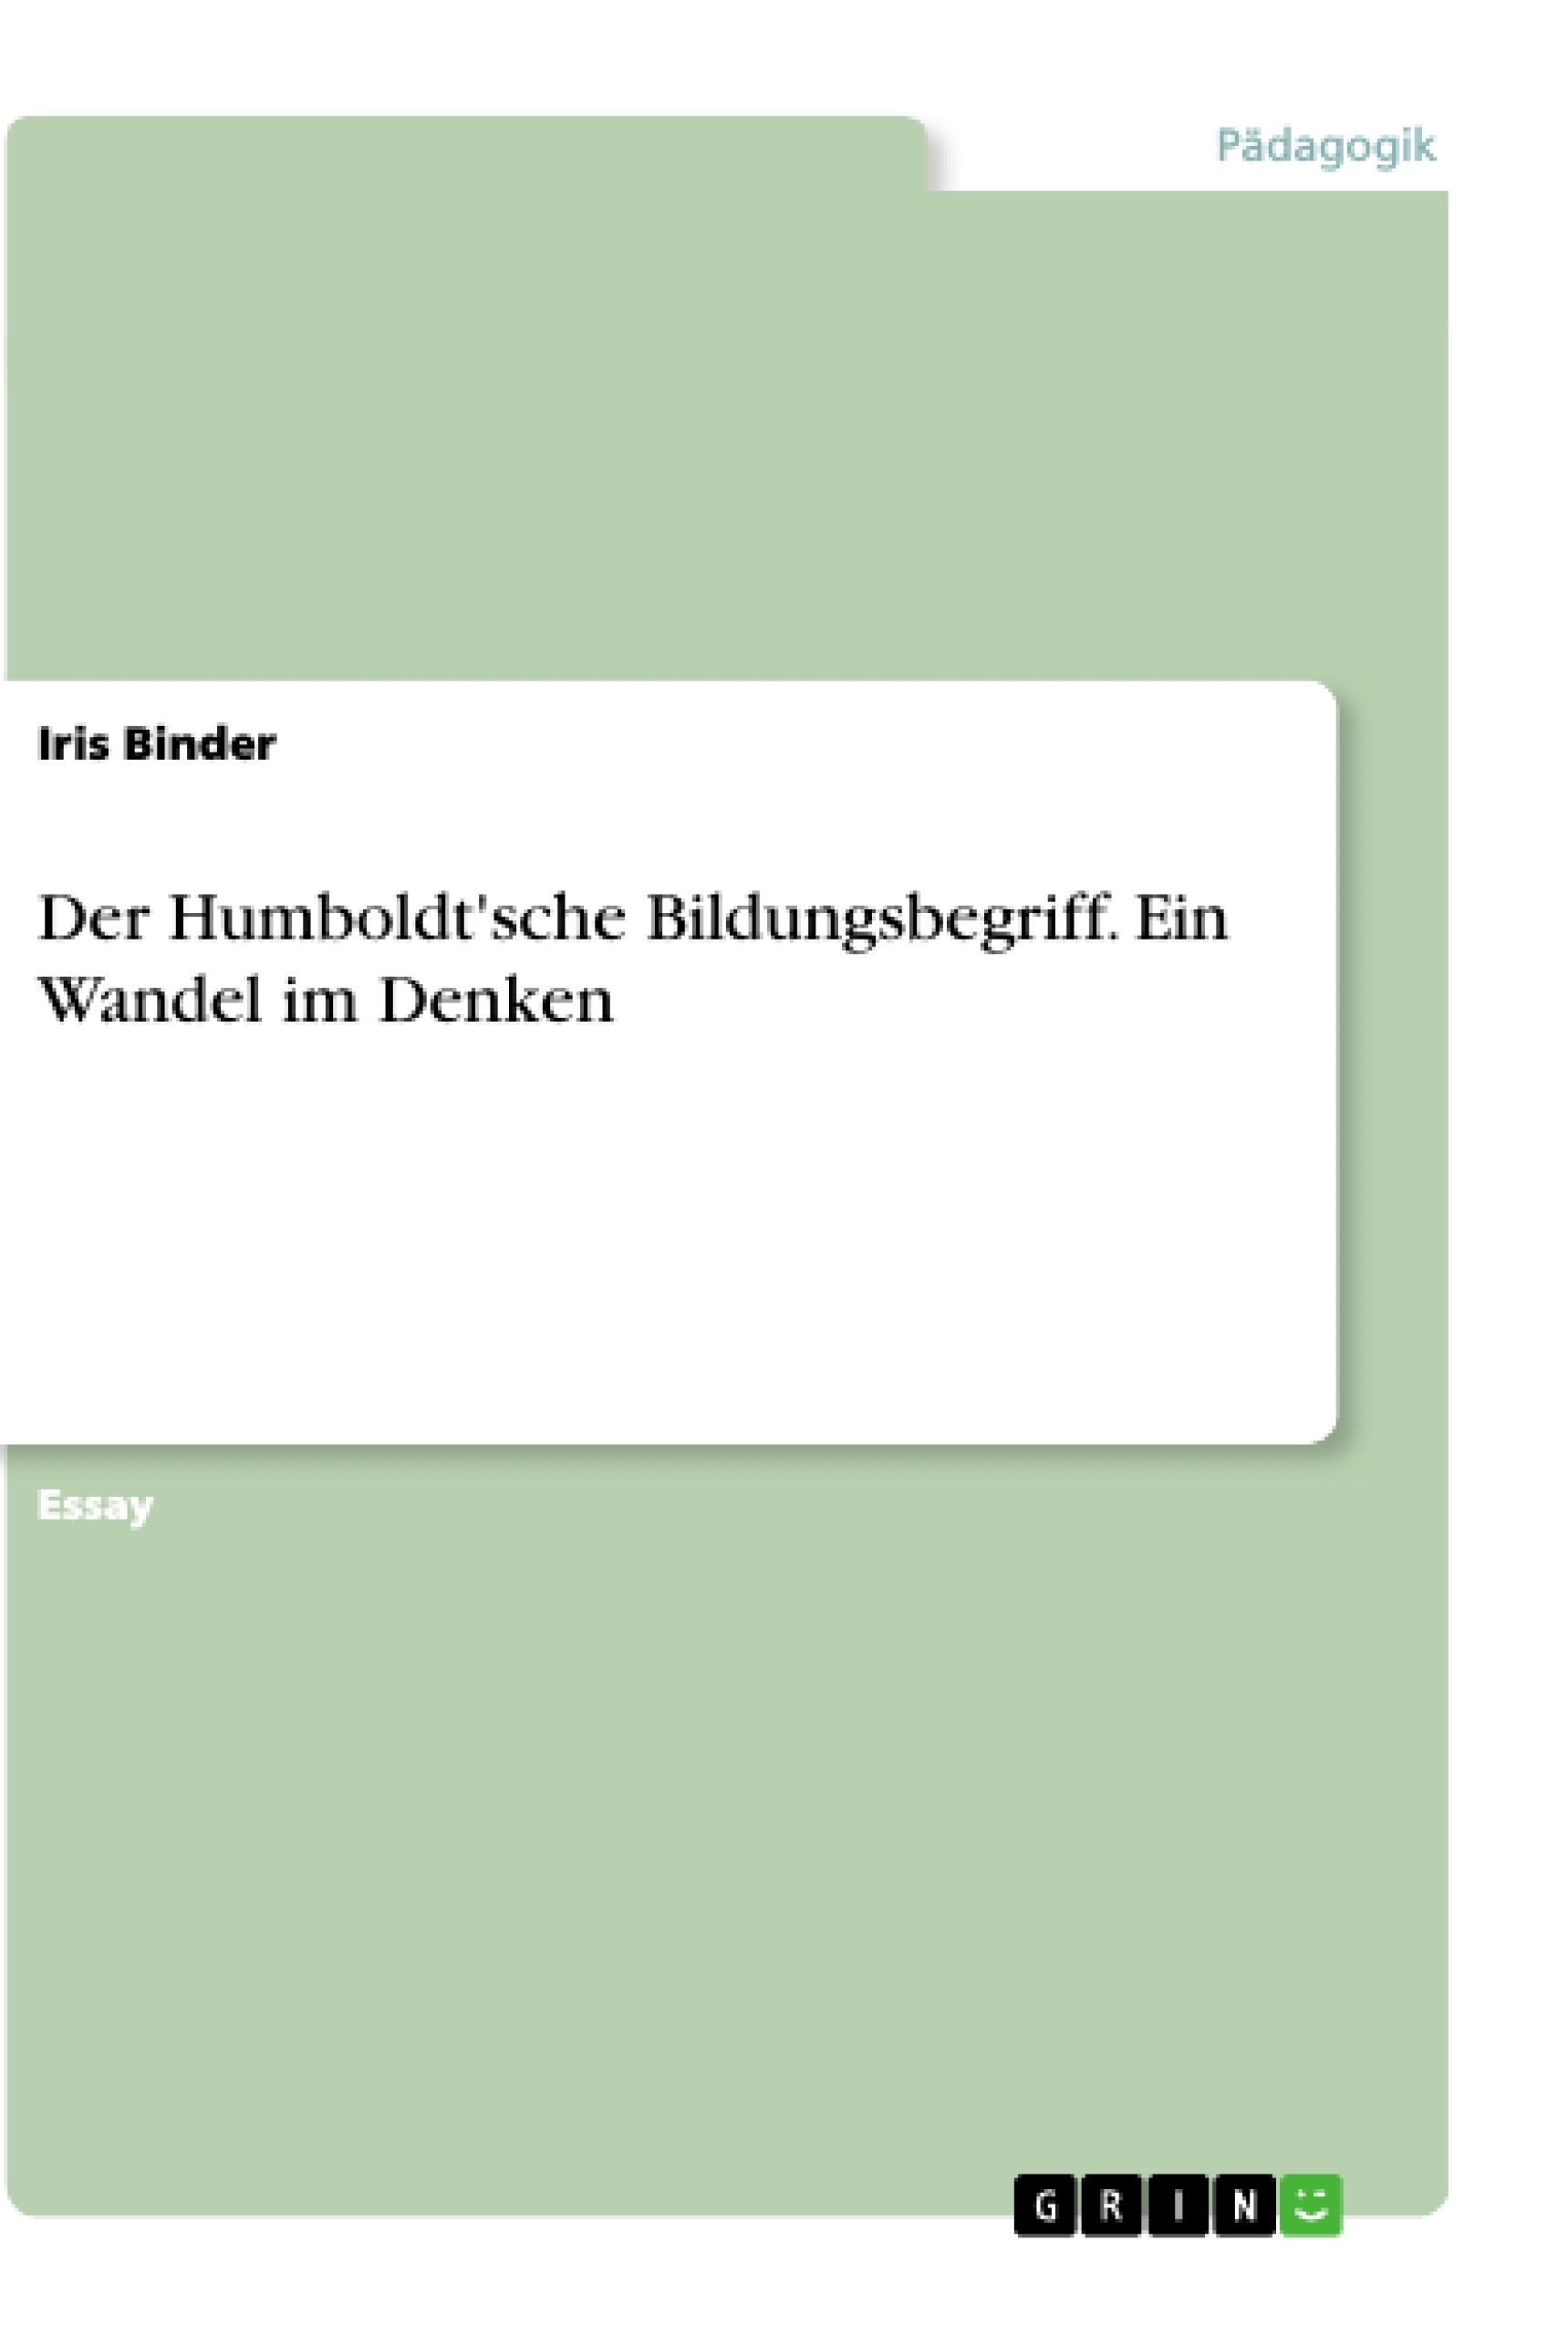 Título: Der Humboldt'sche Bildungsbegriff. Ein Wandel im Denken